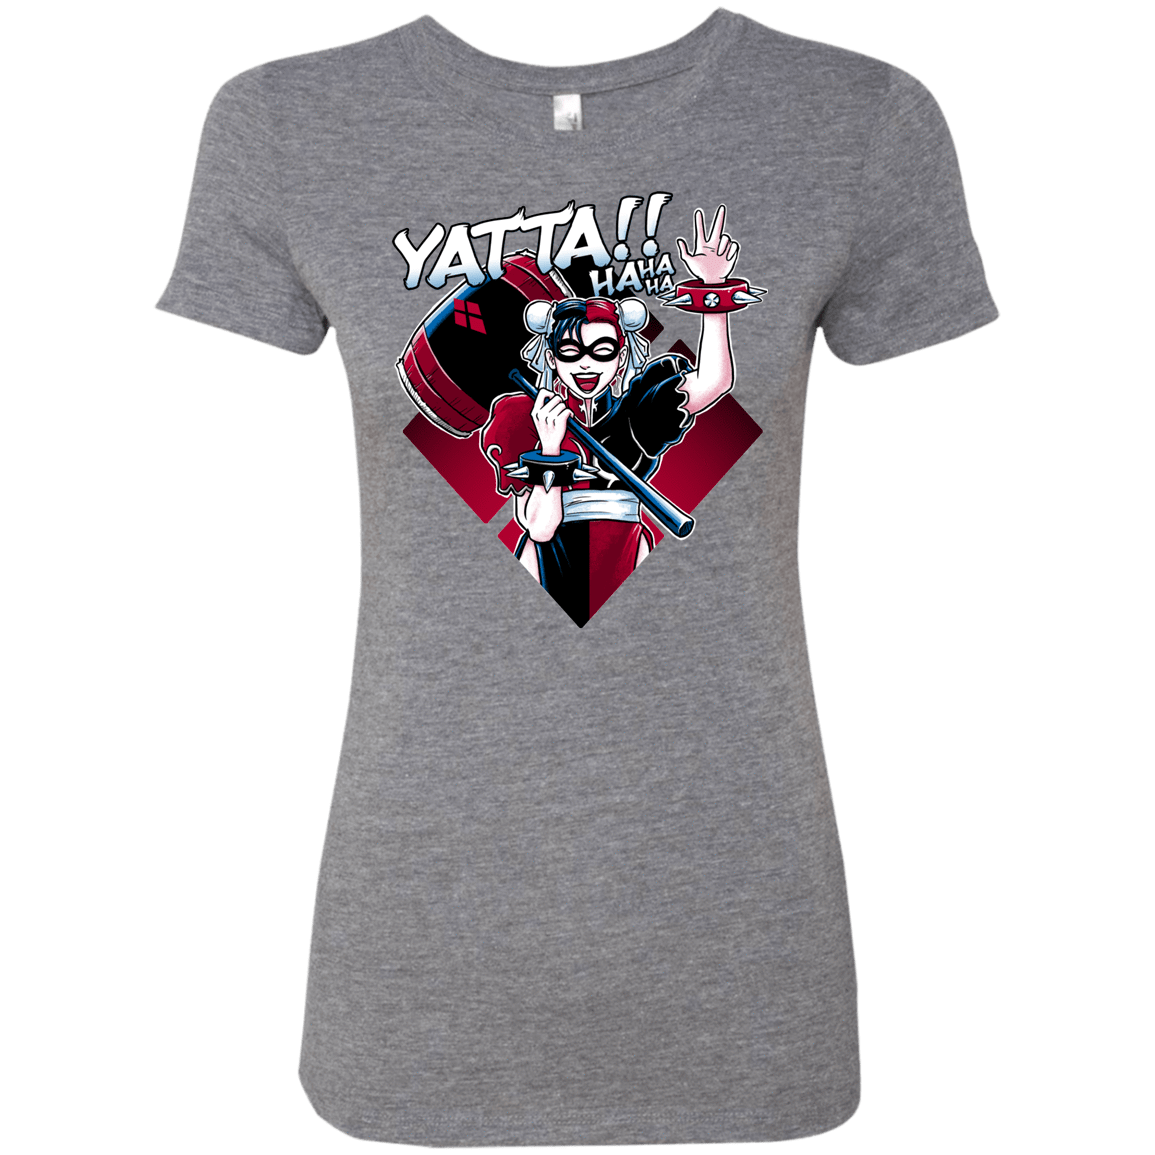 T-Shirts Premium Heather / Small Harley Yatta Women's Triblend T-Shirt